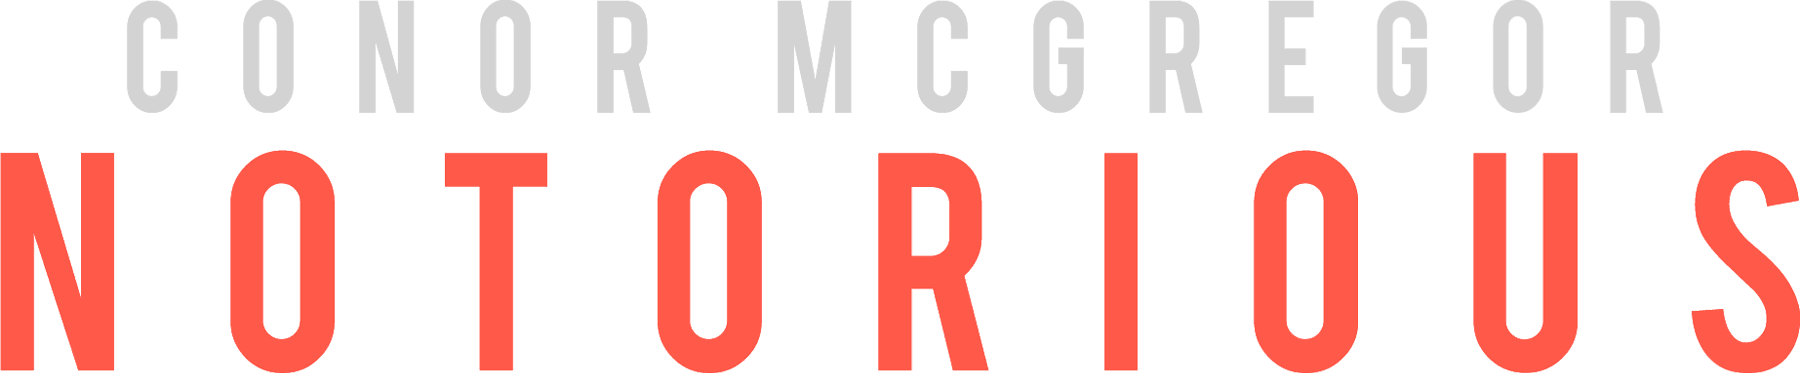 Conor McGregor: Notorious logo